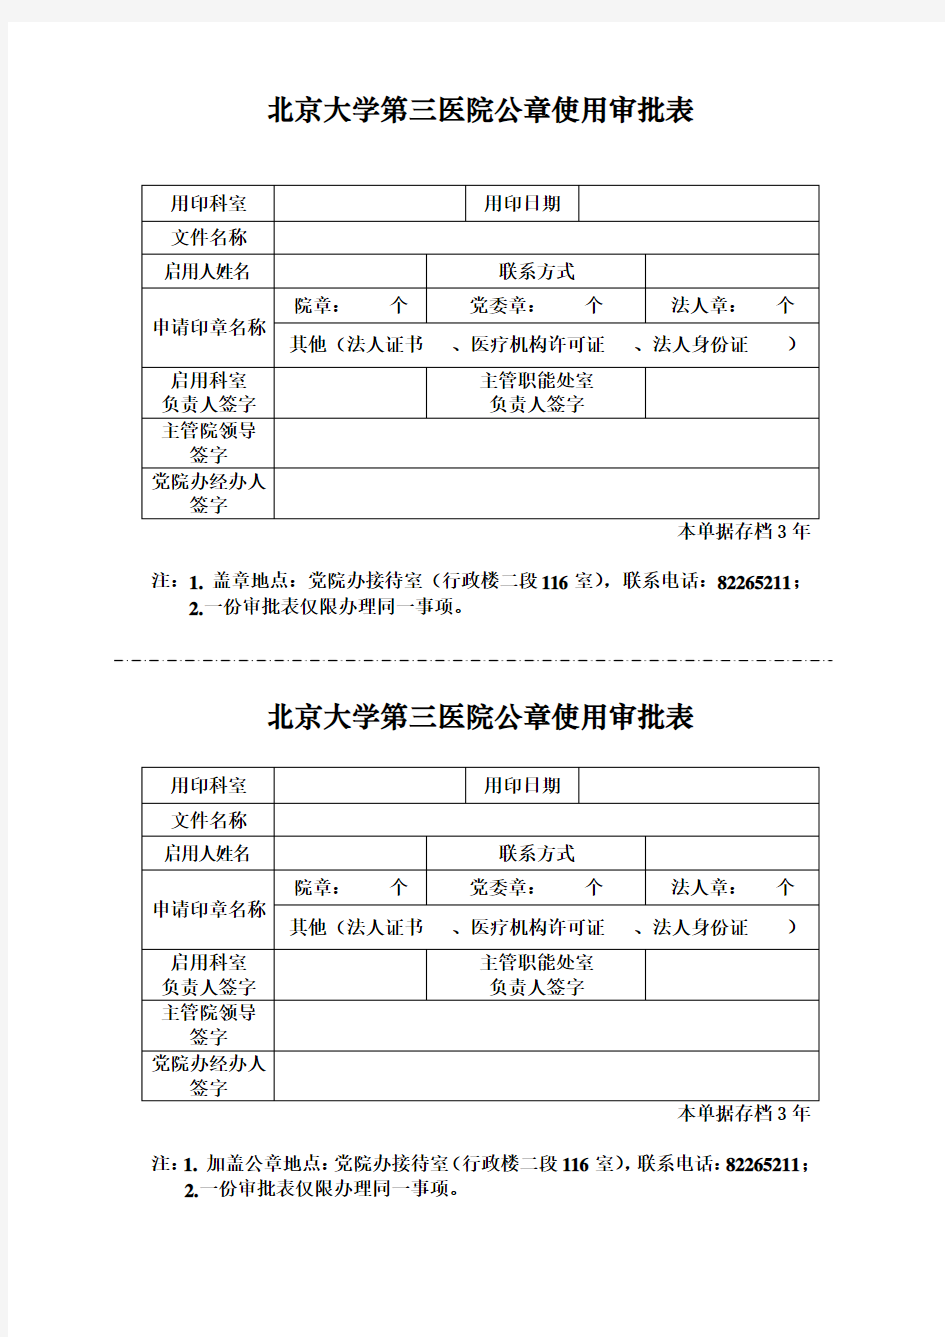 北京大学第三医院公章使用审批表